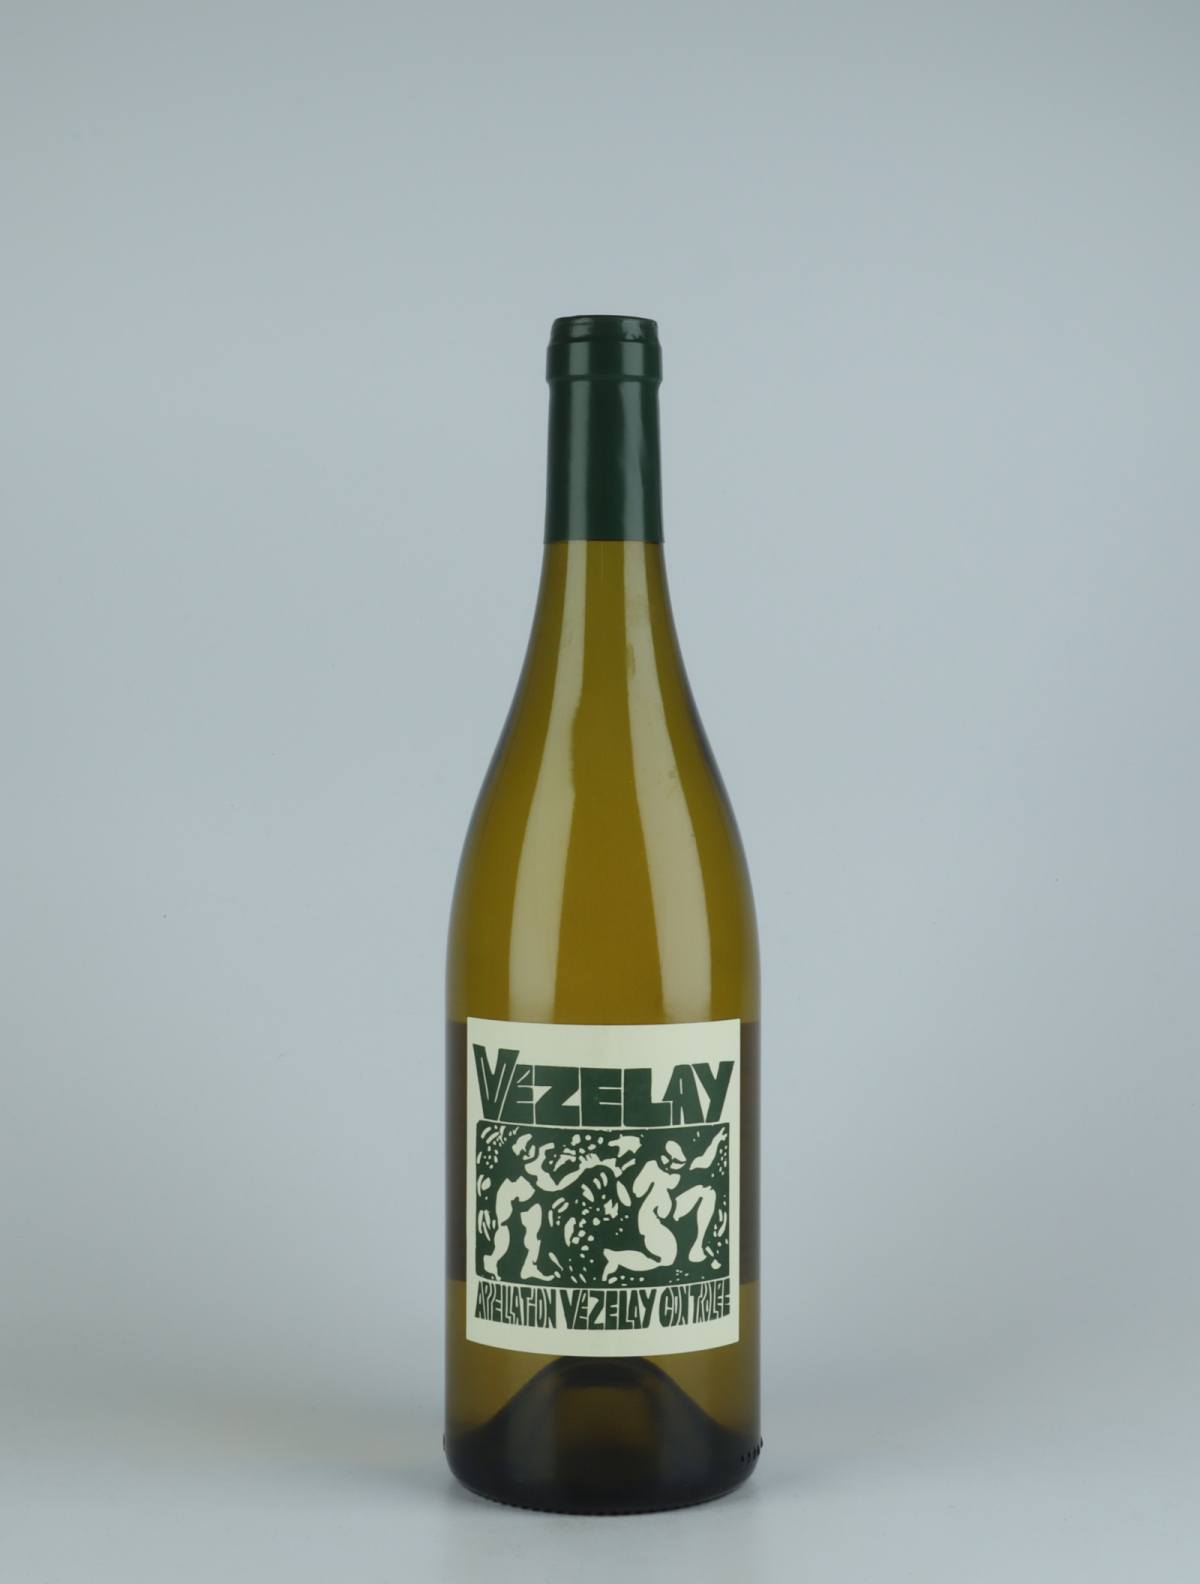 A bottle 2020 Bourgogne Vézelay White wine from La Sœur Cadette, Burgundy in France